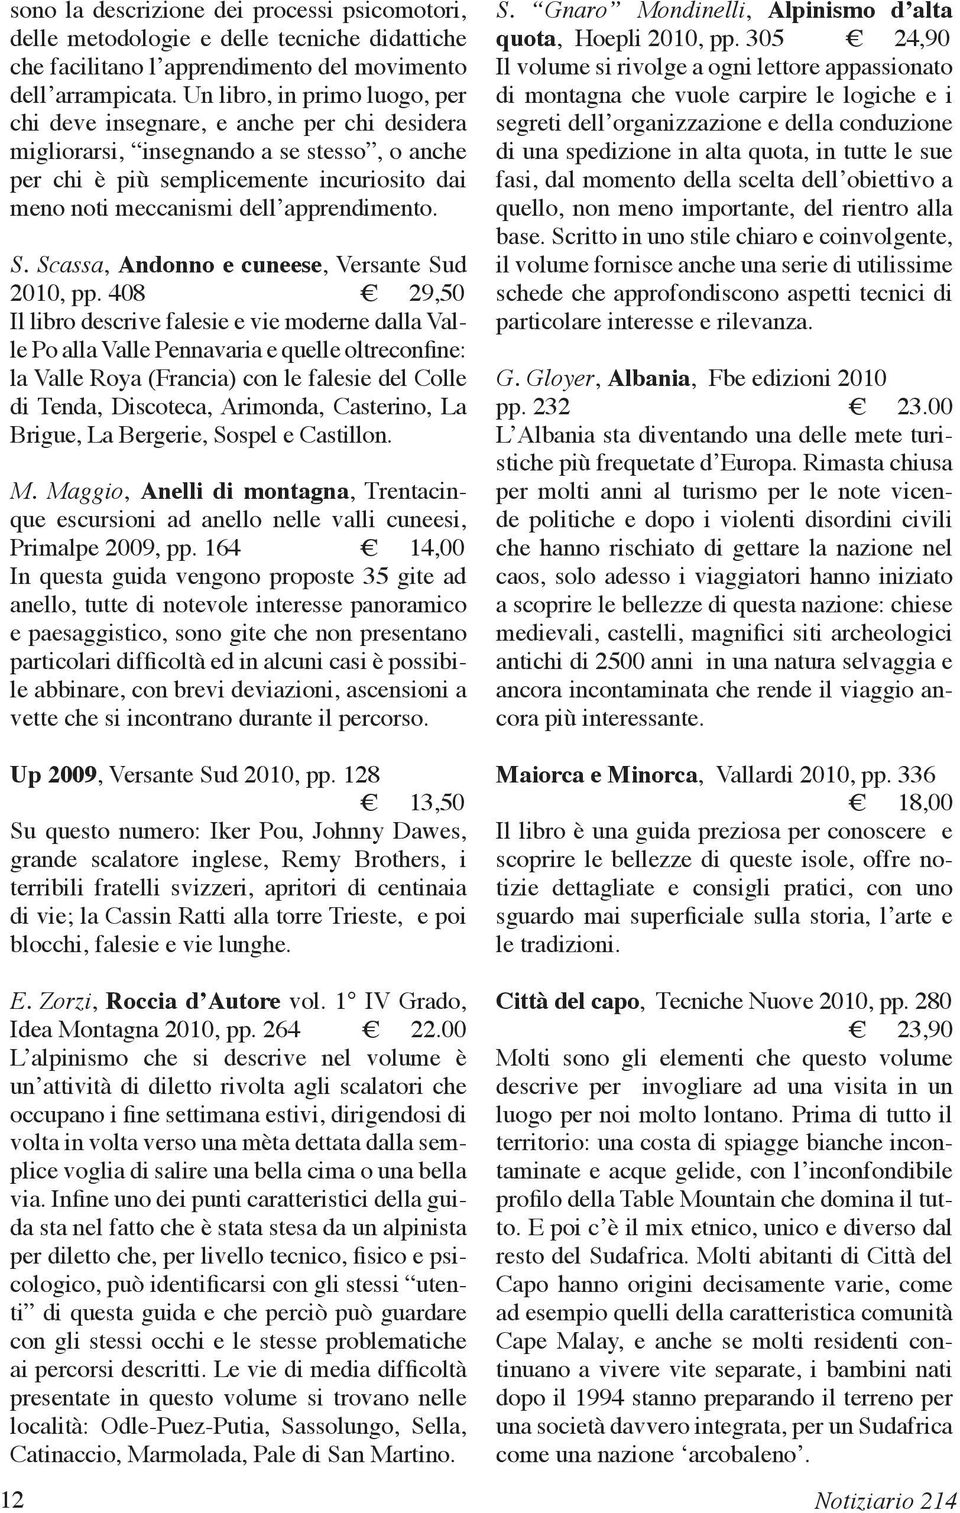 apprendimento. S. Scassa, Andonno e cuneese, Versante Sud 2010, pp.